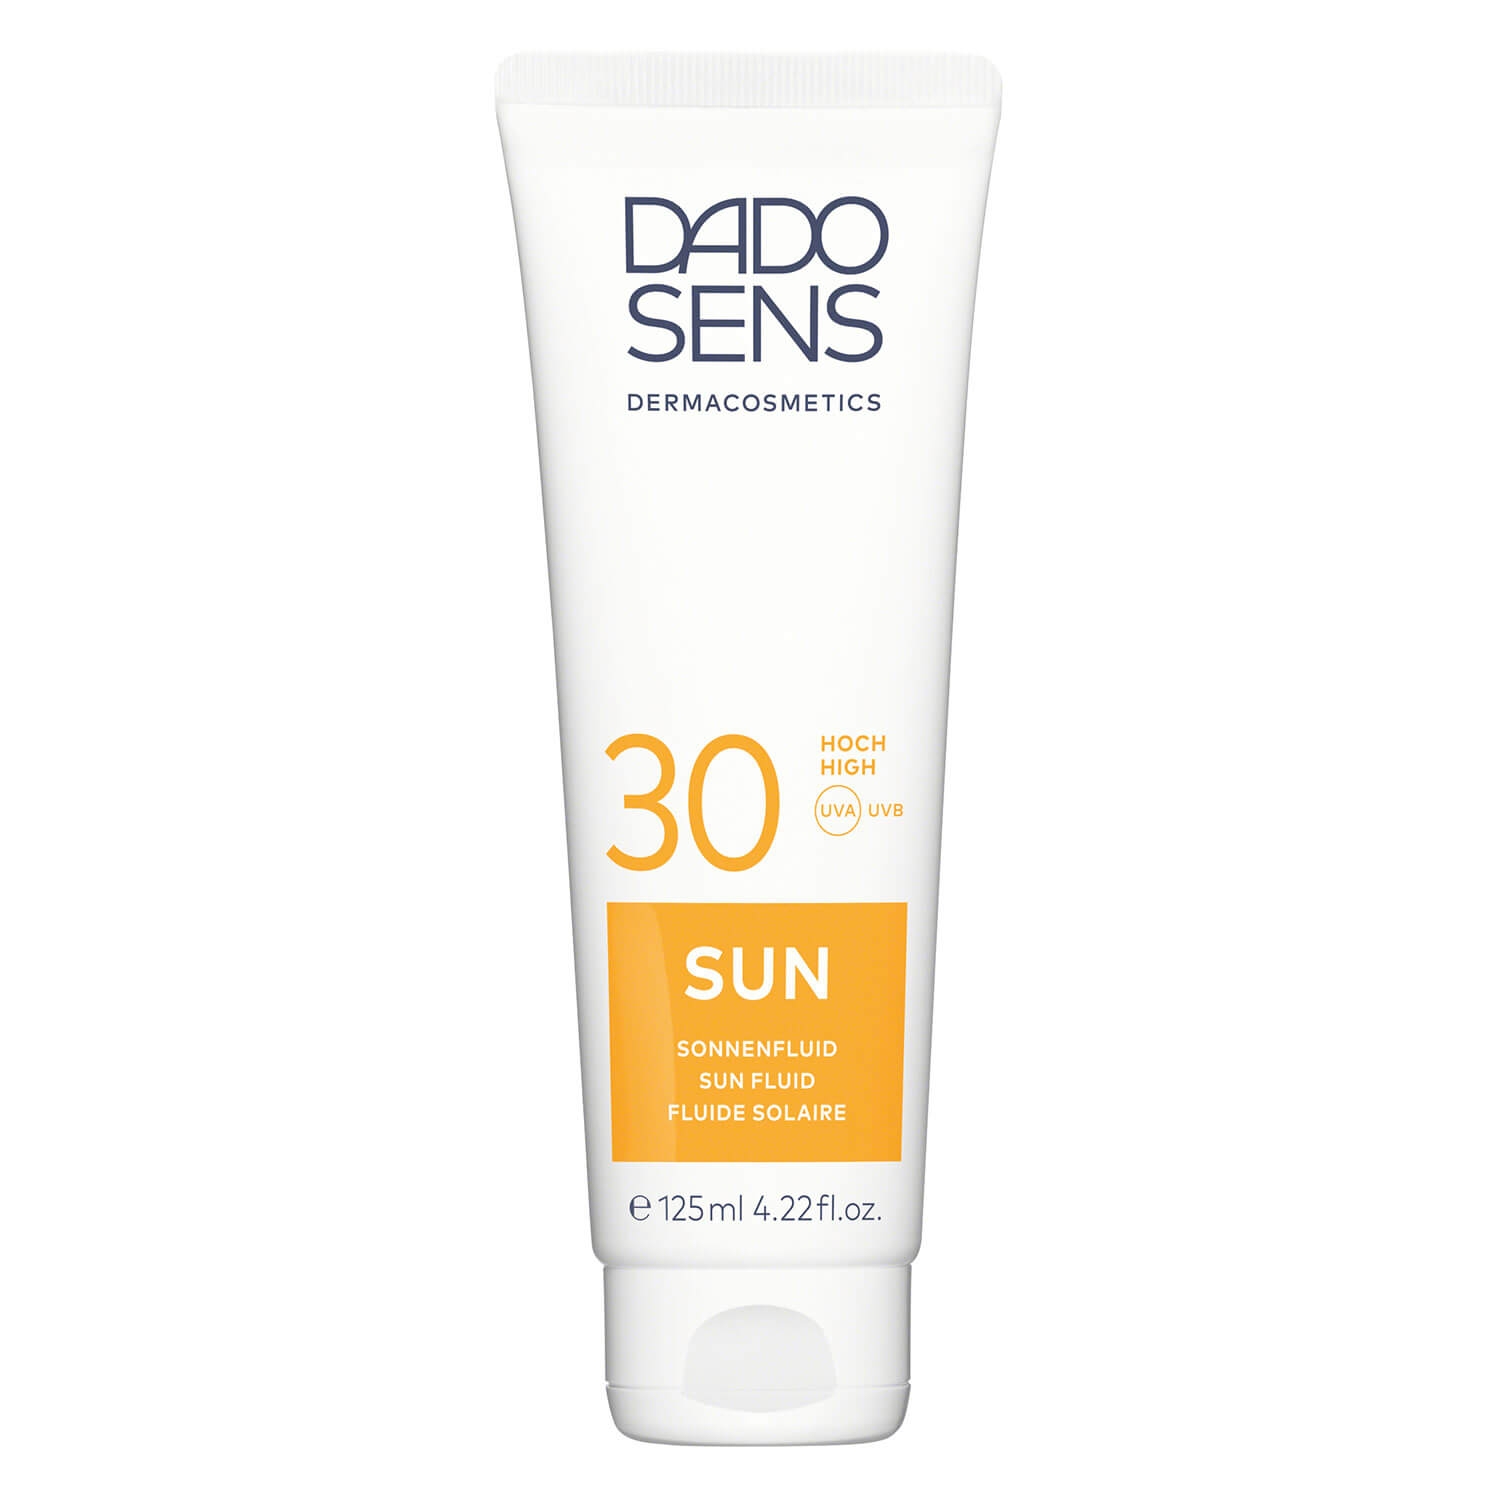 Produktbild von DADO SENS SUN - Sonnenfluid SPF 30